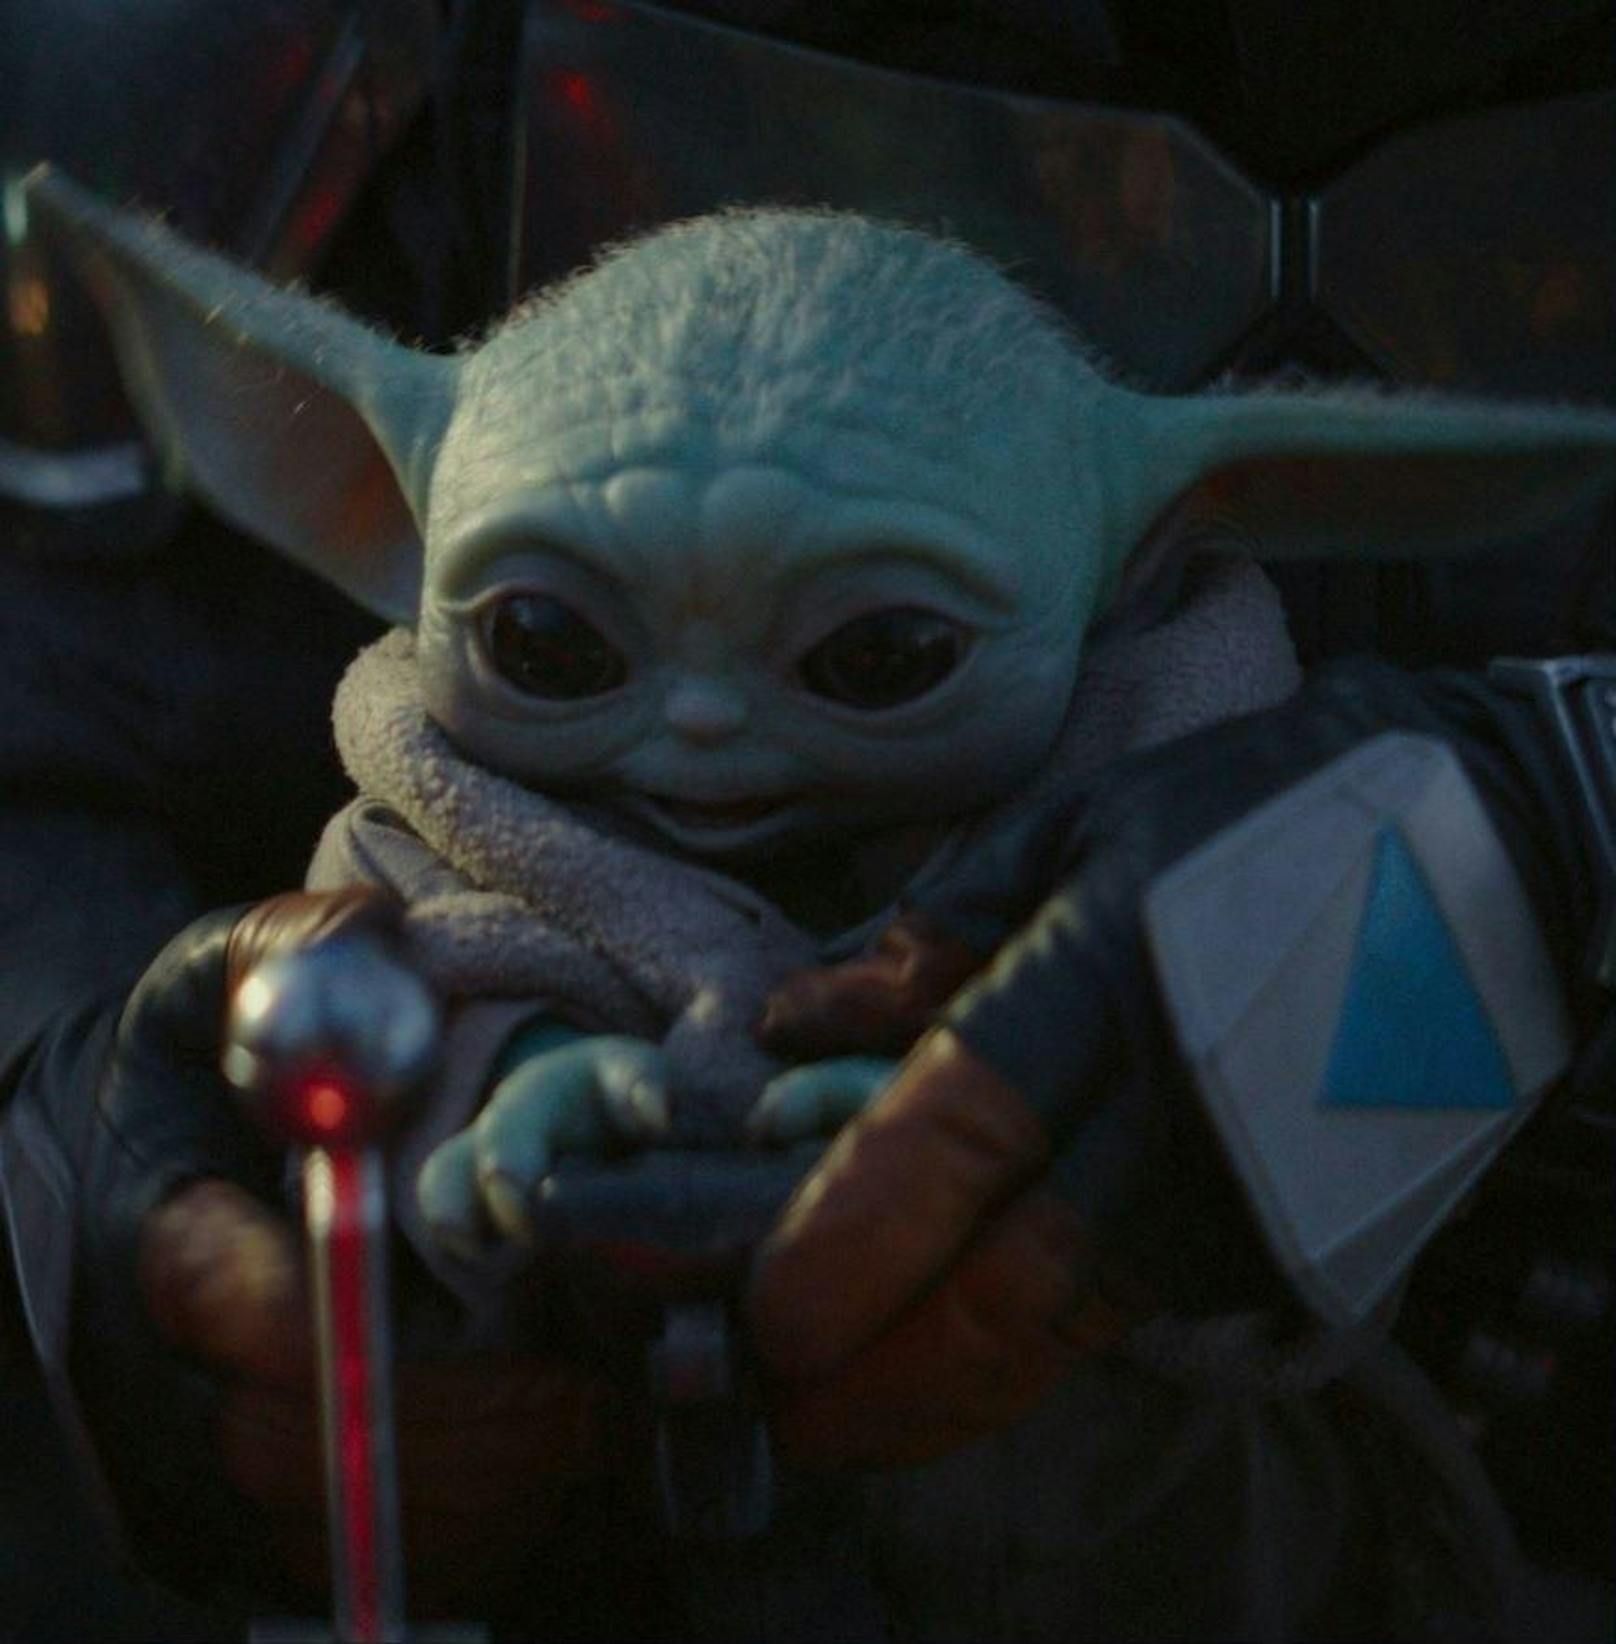 So unheimlich hätte Baby Yoda beinahe ausgesehen